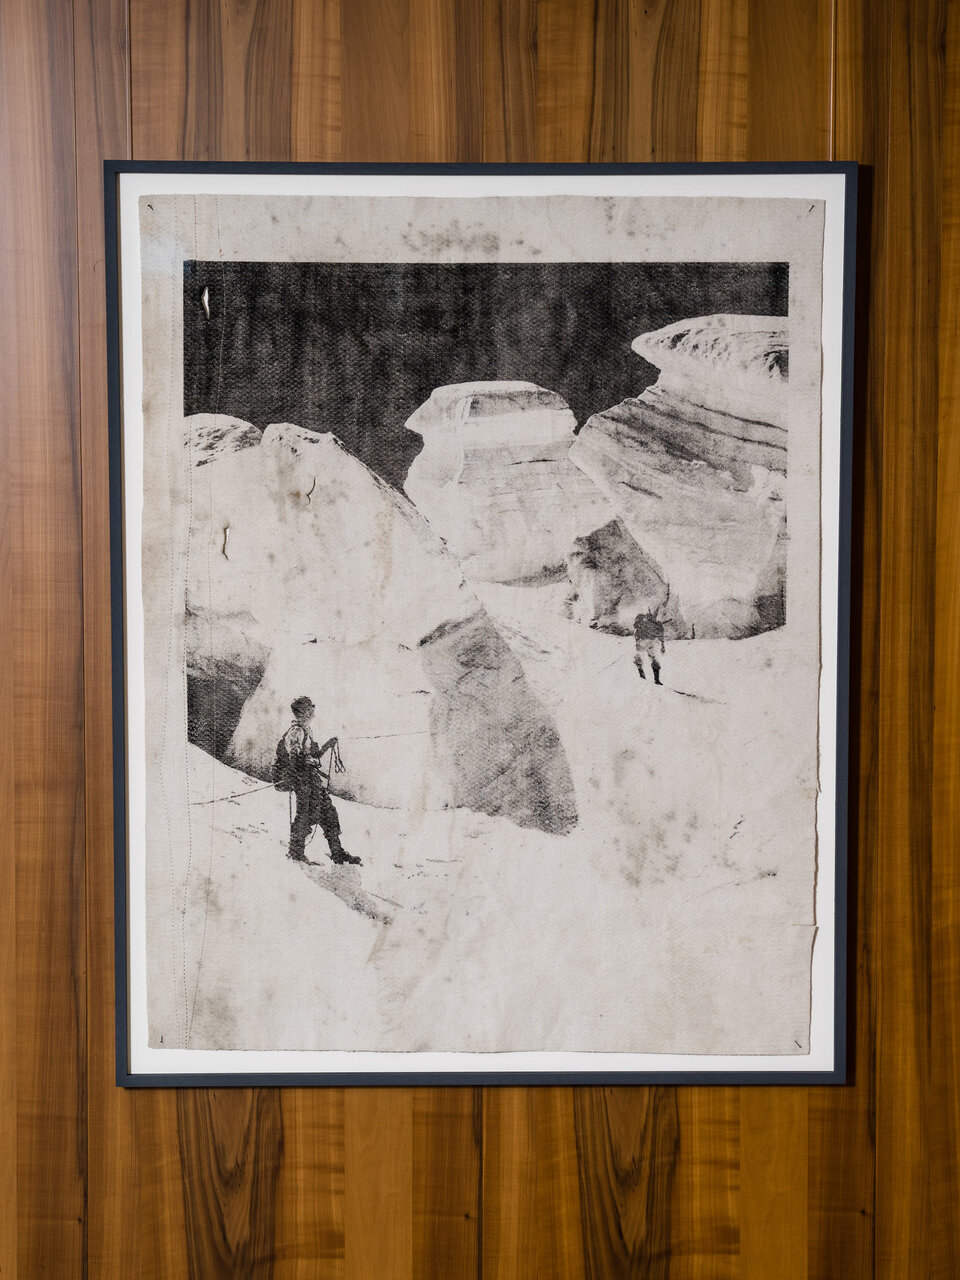 Douglas Mandry, «Seilschaft auf dem Sellagletscher», 2020, 137.5 x 110.5 cm (Rahmen), Lithographie auf gebrauchtem Gletschervlies, Unikat. Mit freundlicher Genehmigung des Künstlers.